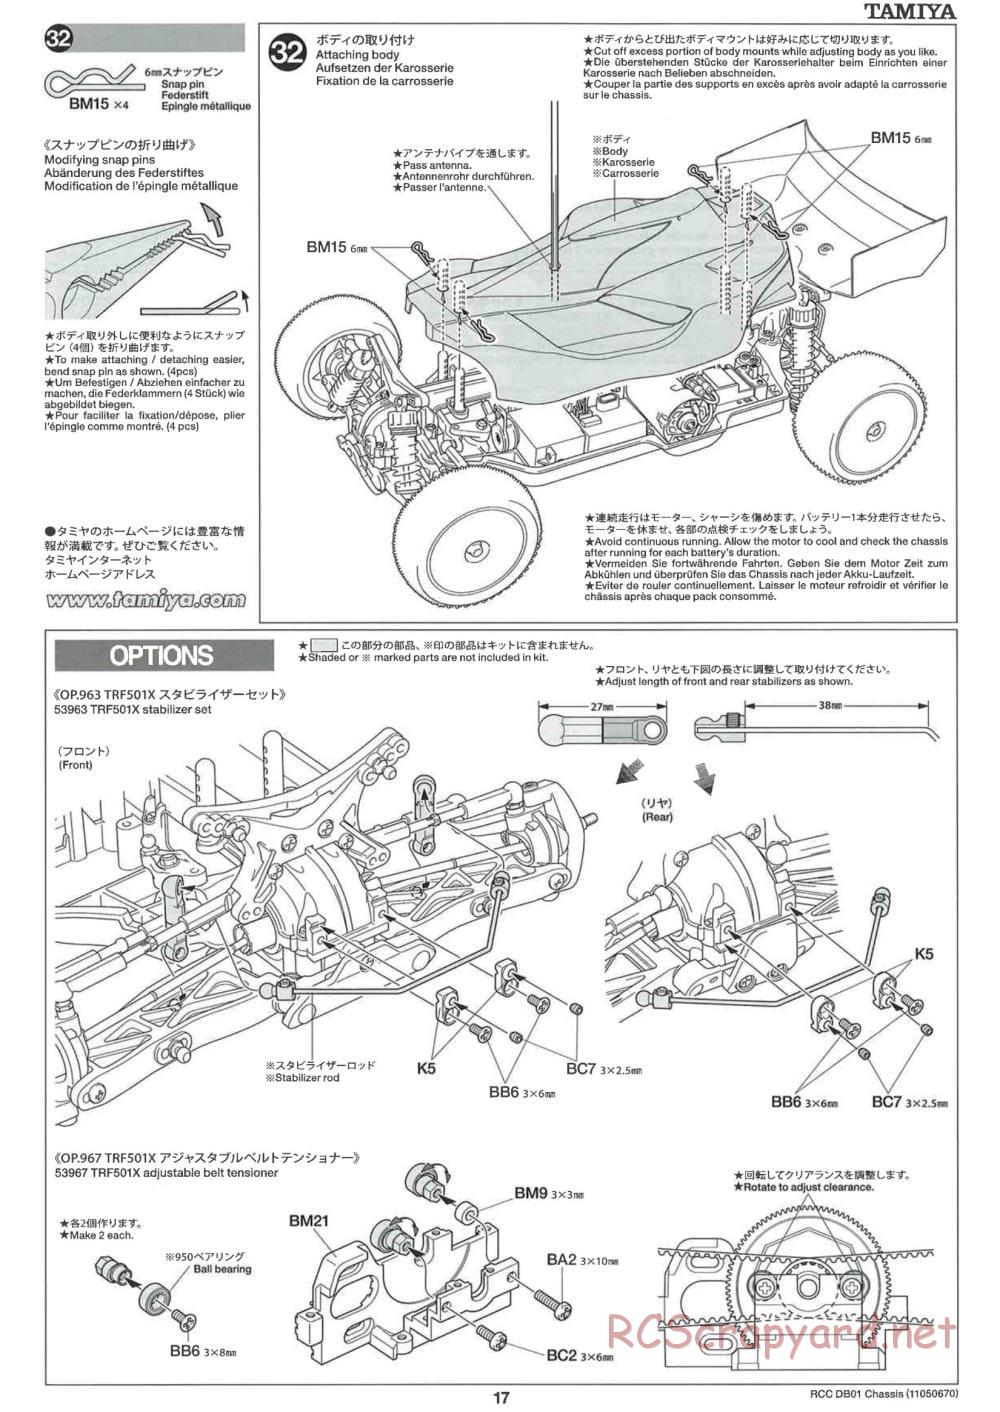 Tamiya - DB-01 Chassis - Manual - Page 17